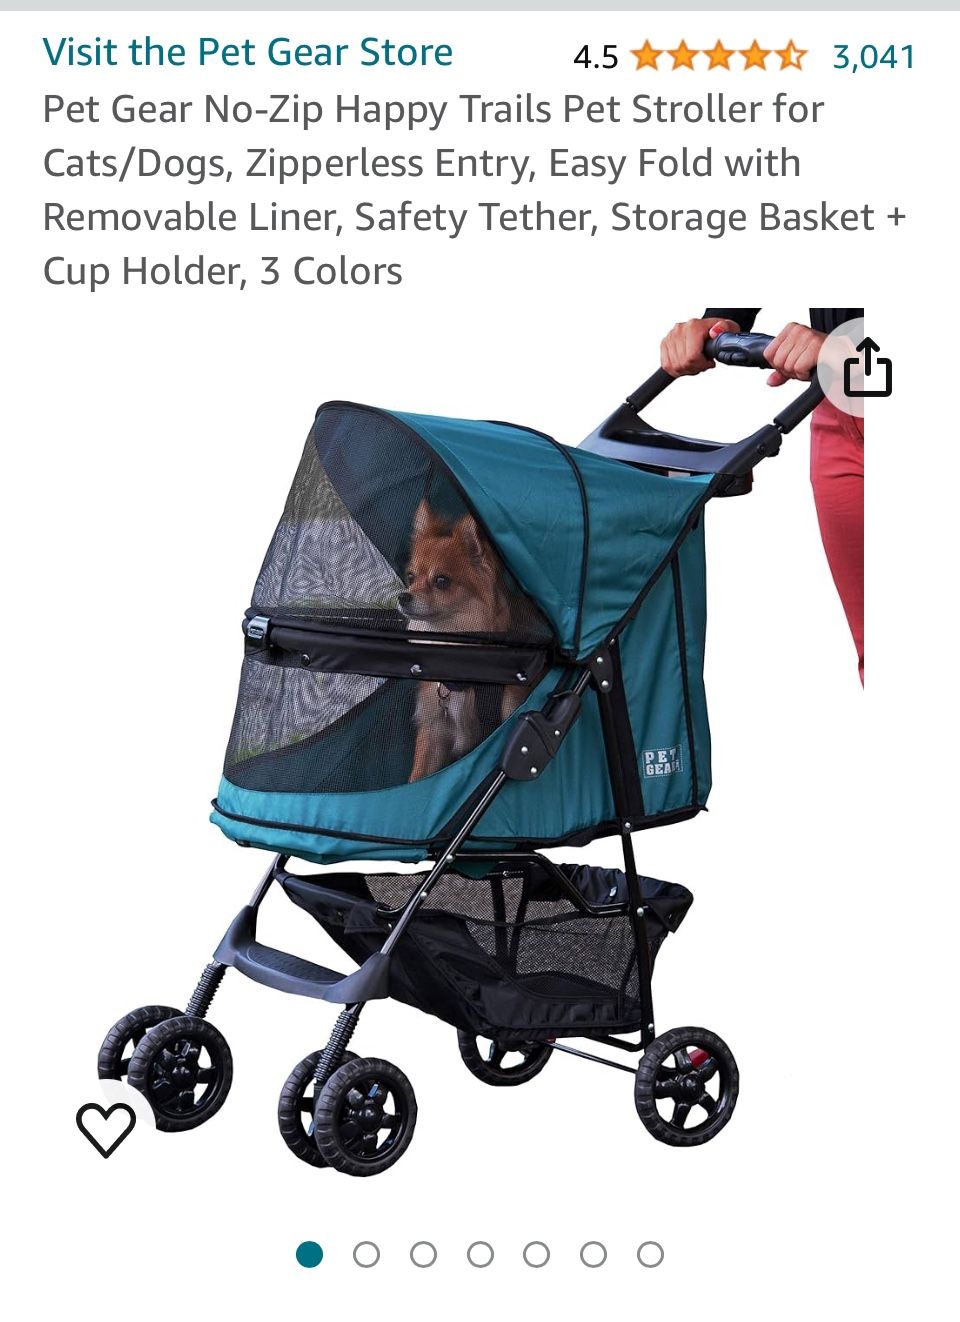 Dog Stroller- Used Once